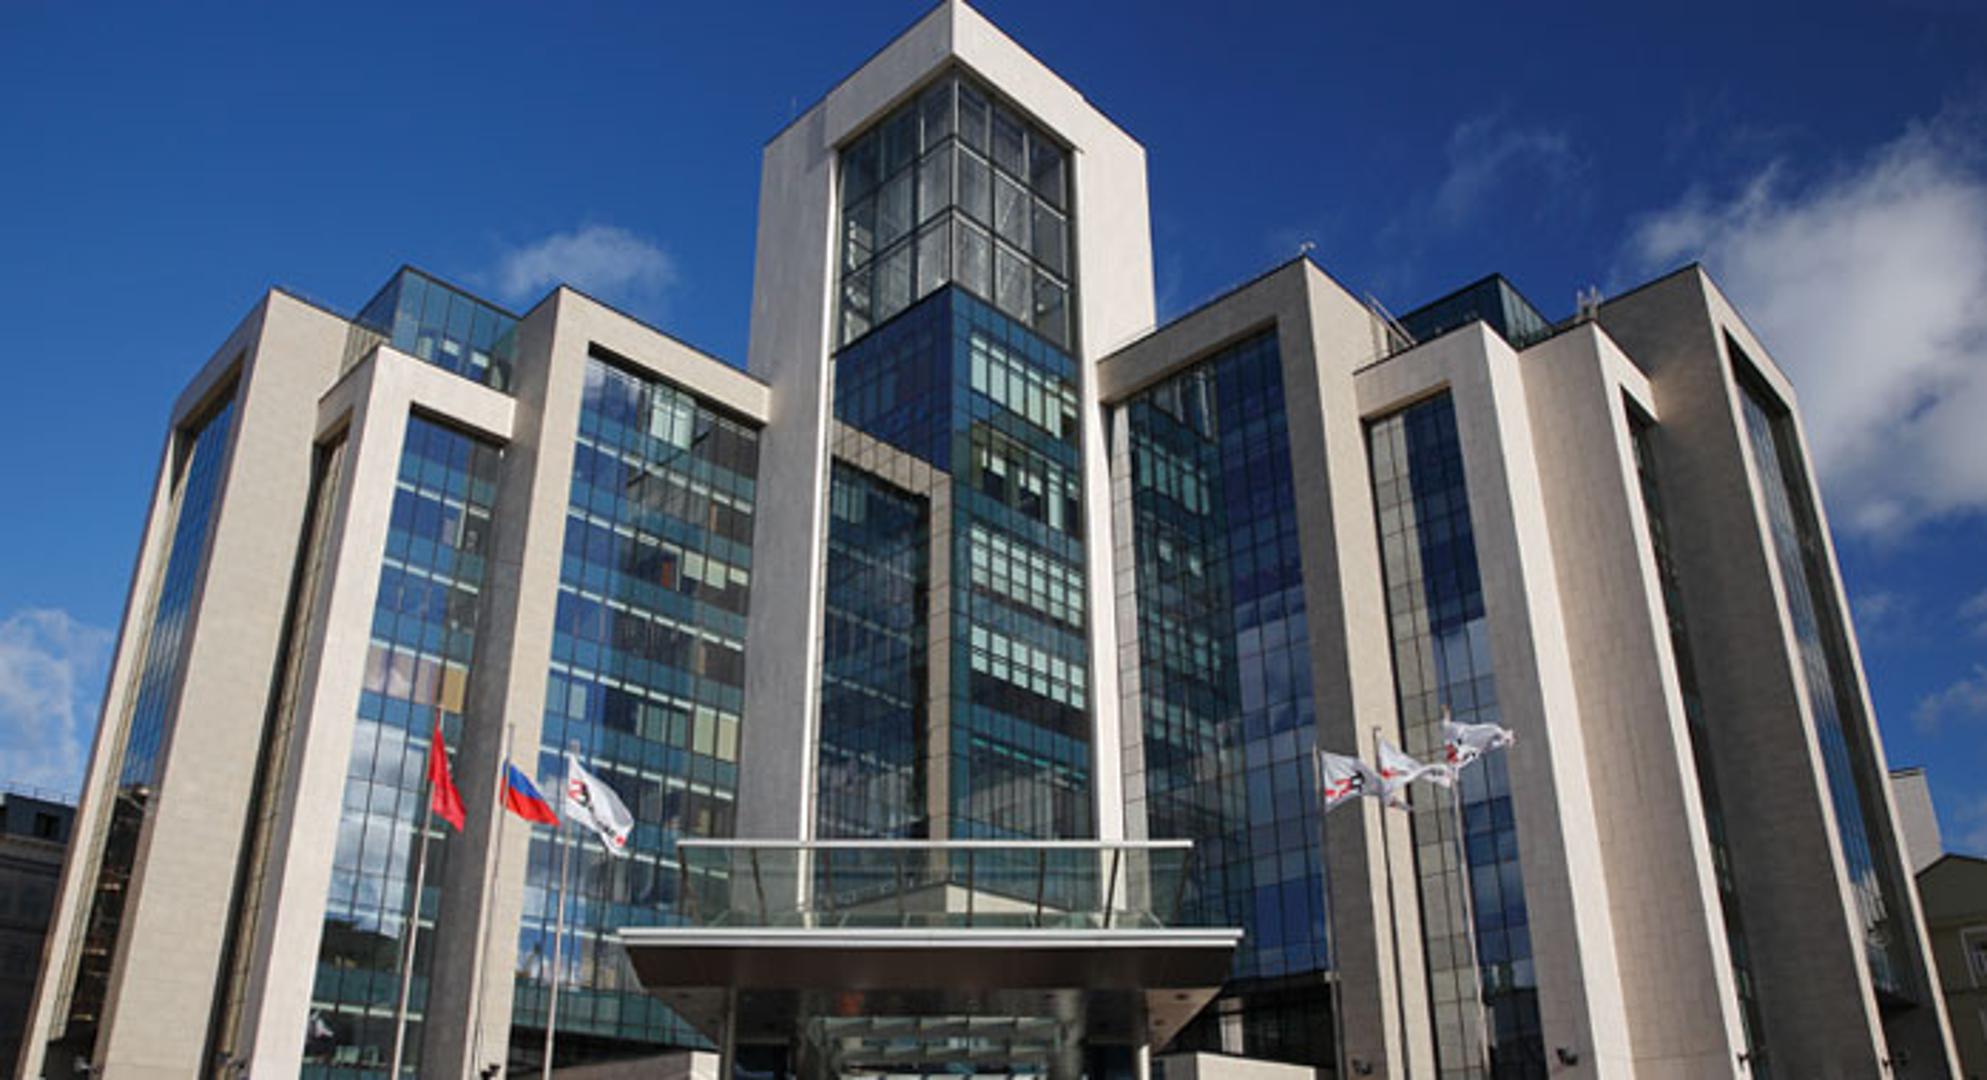 Raskošna upravna zgrada kompanije
LUKOIL u ruskoj metropoli